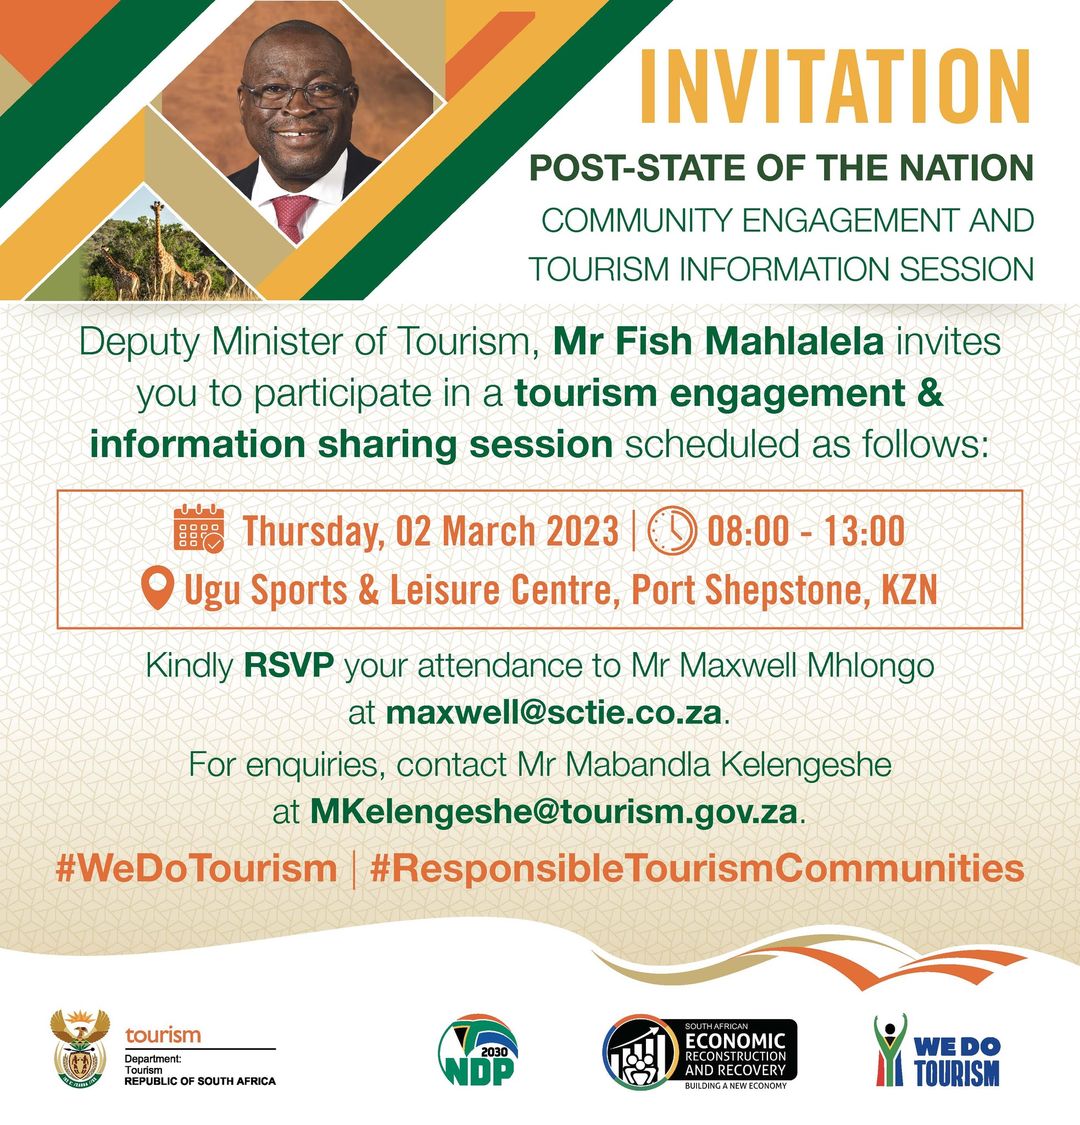 Imbizo on advancing tourism in the Ray Nkonyeni Local Municipality in the KwaZulu-Natal Province